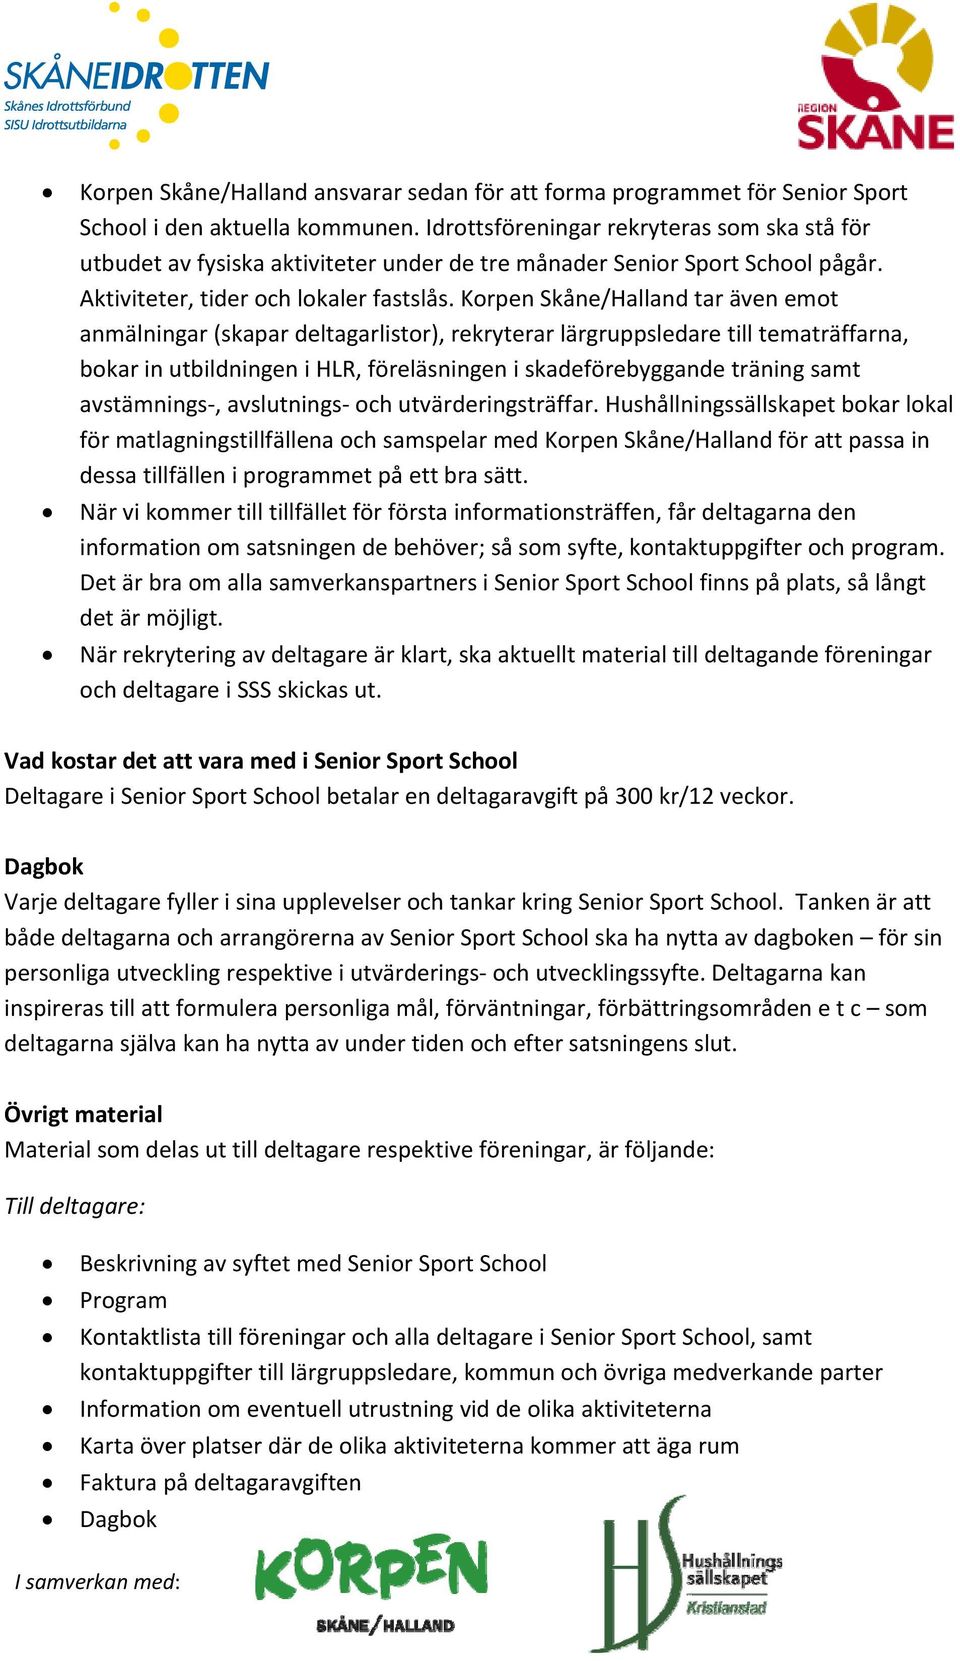 Korpen Skåne/Halland tar även emot anmälningar (skapar deltagarlistor), rekryterar lärgruppsledare till tematräffarna, bokar in utbildningen i HLR, föreläsningen i skadeförebyggande träning samt